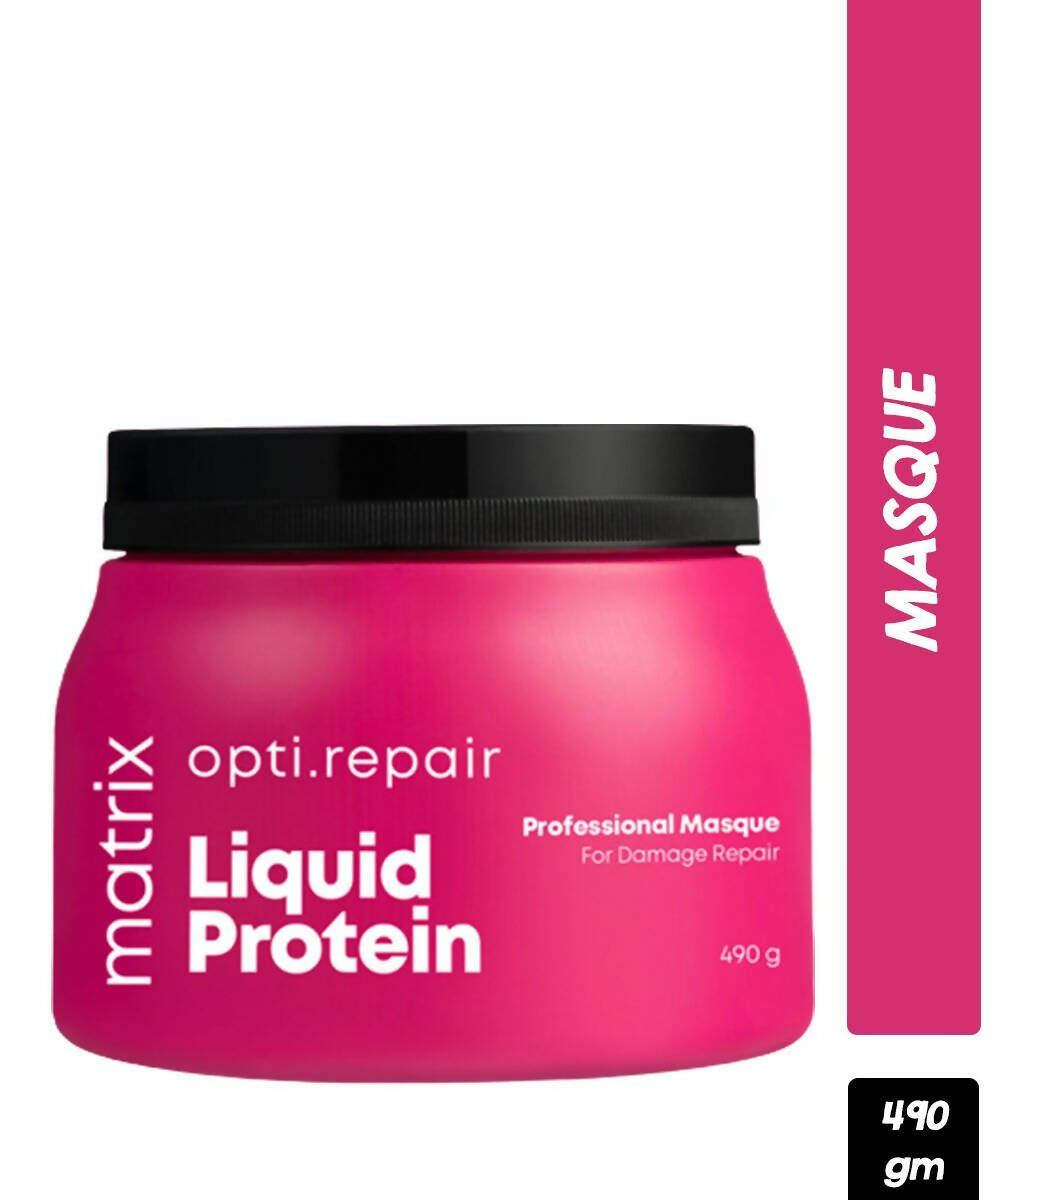 Matrix Opti Repair Professional Liquid Protein Masque For Damage Repair - Distacart